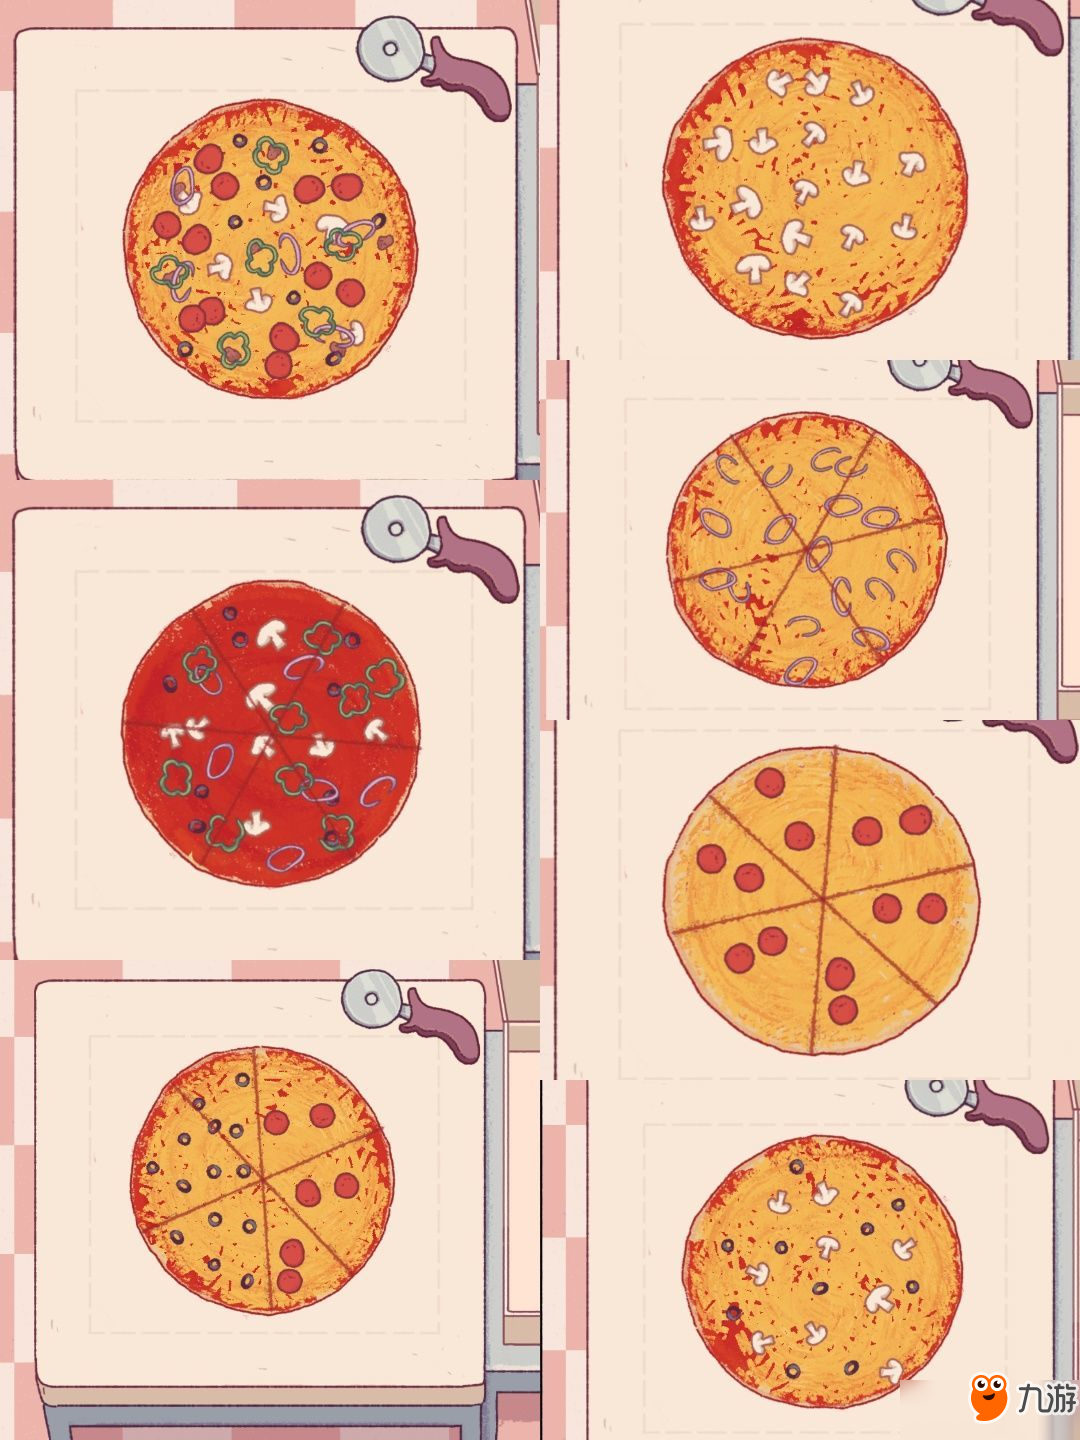 可口的披萨美味的披萨怎么制作披萨？制作披萨技巧分享